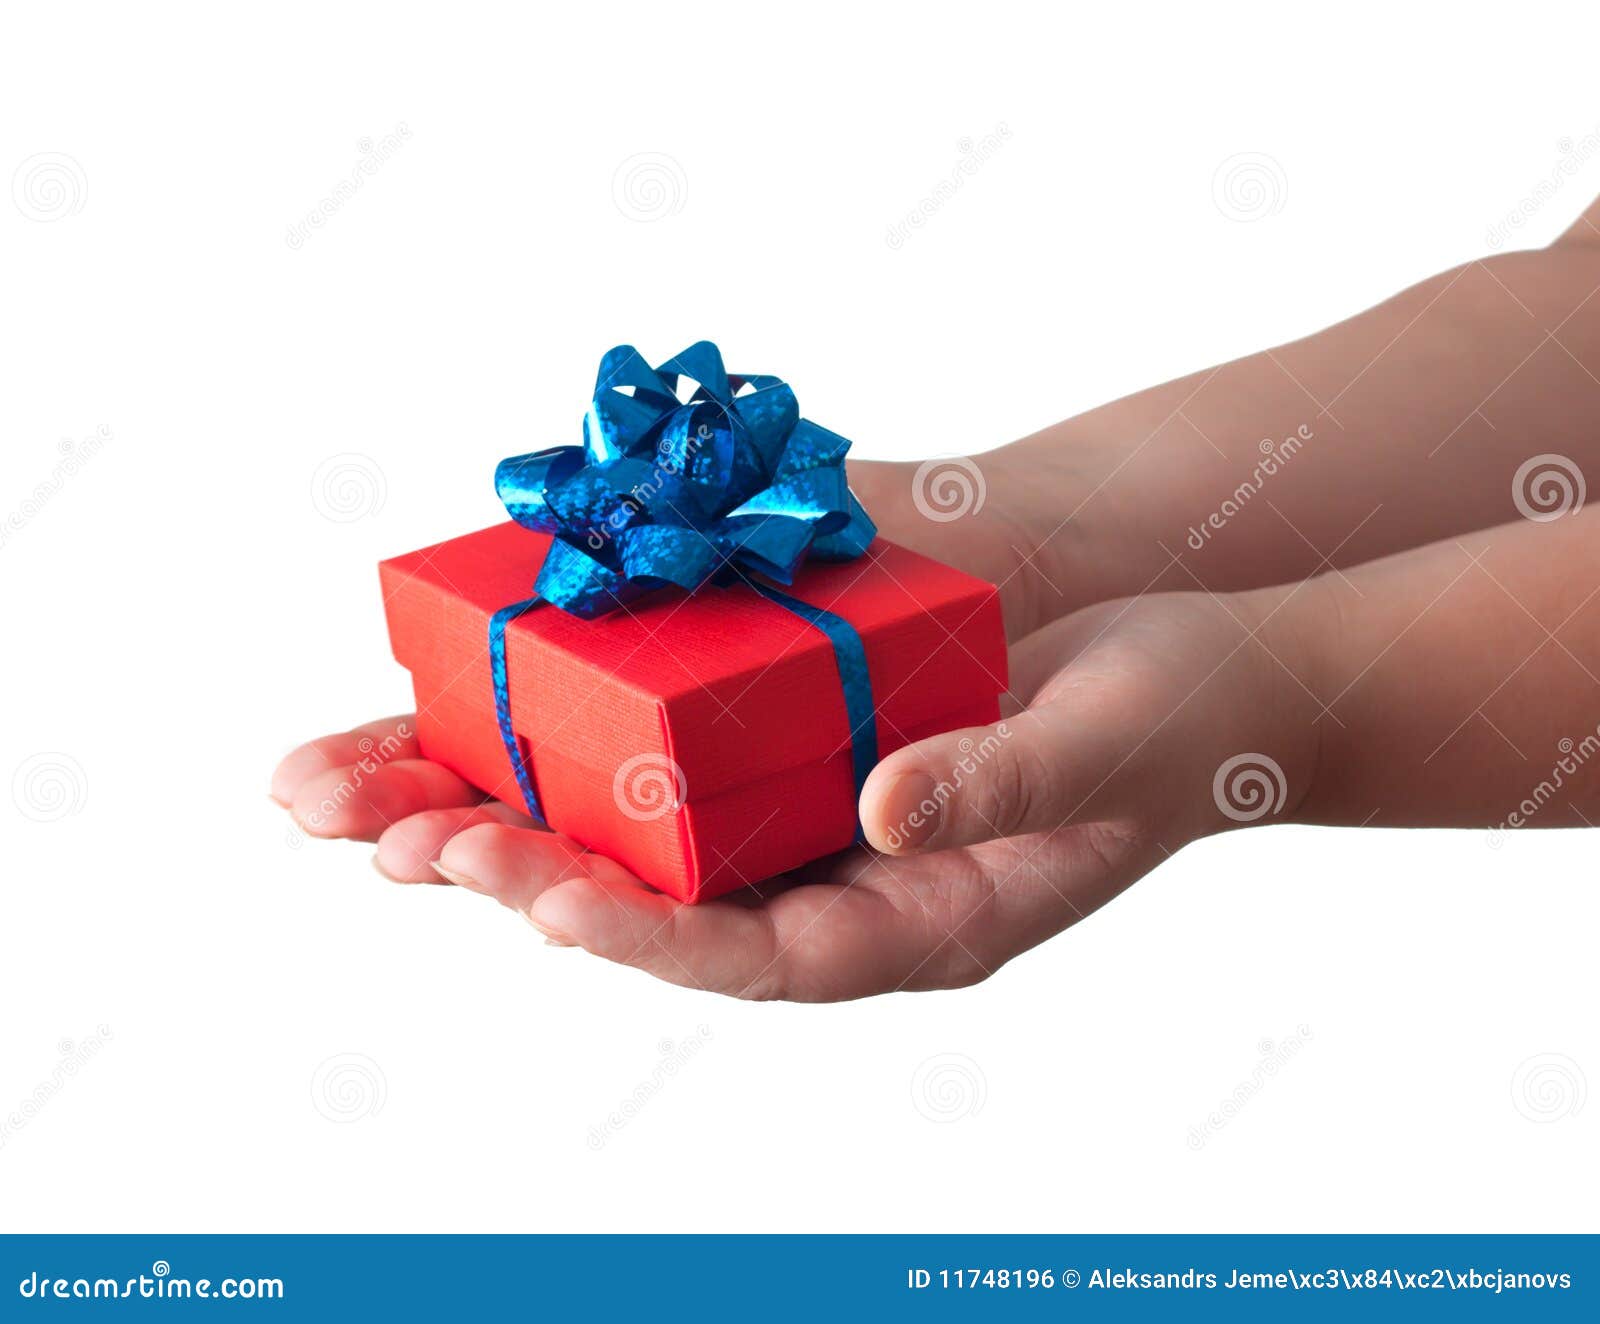 Bijdrager Blokkeren De lucht Handen die een gift geven stock foto. Image of kerstmis - 11748196